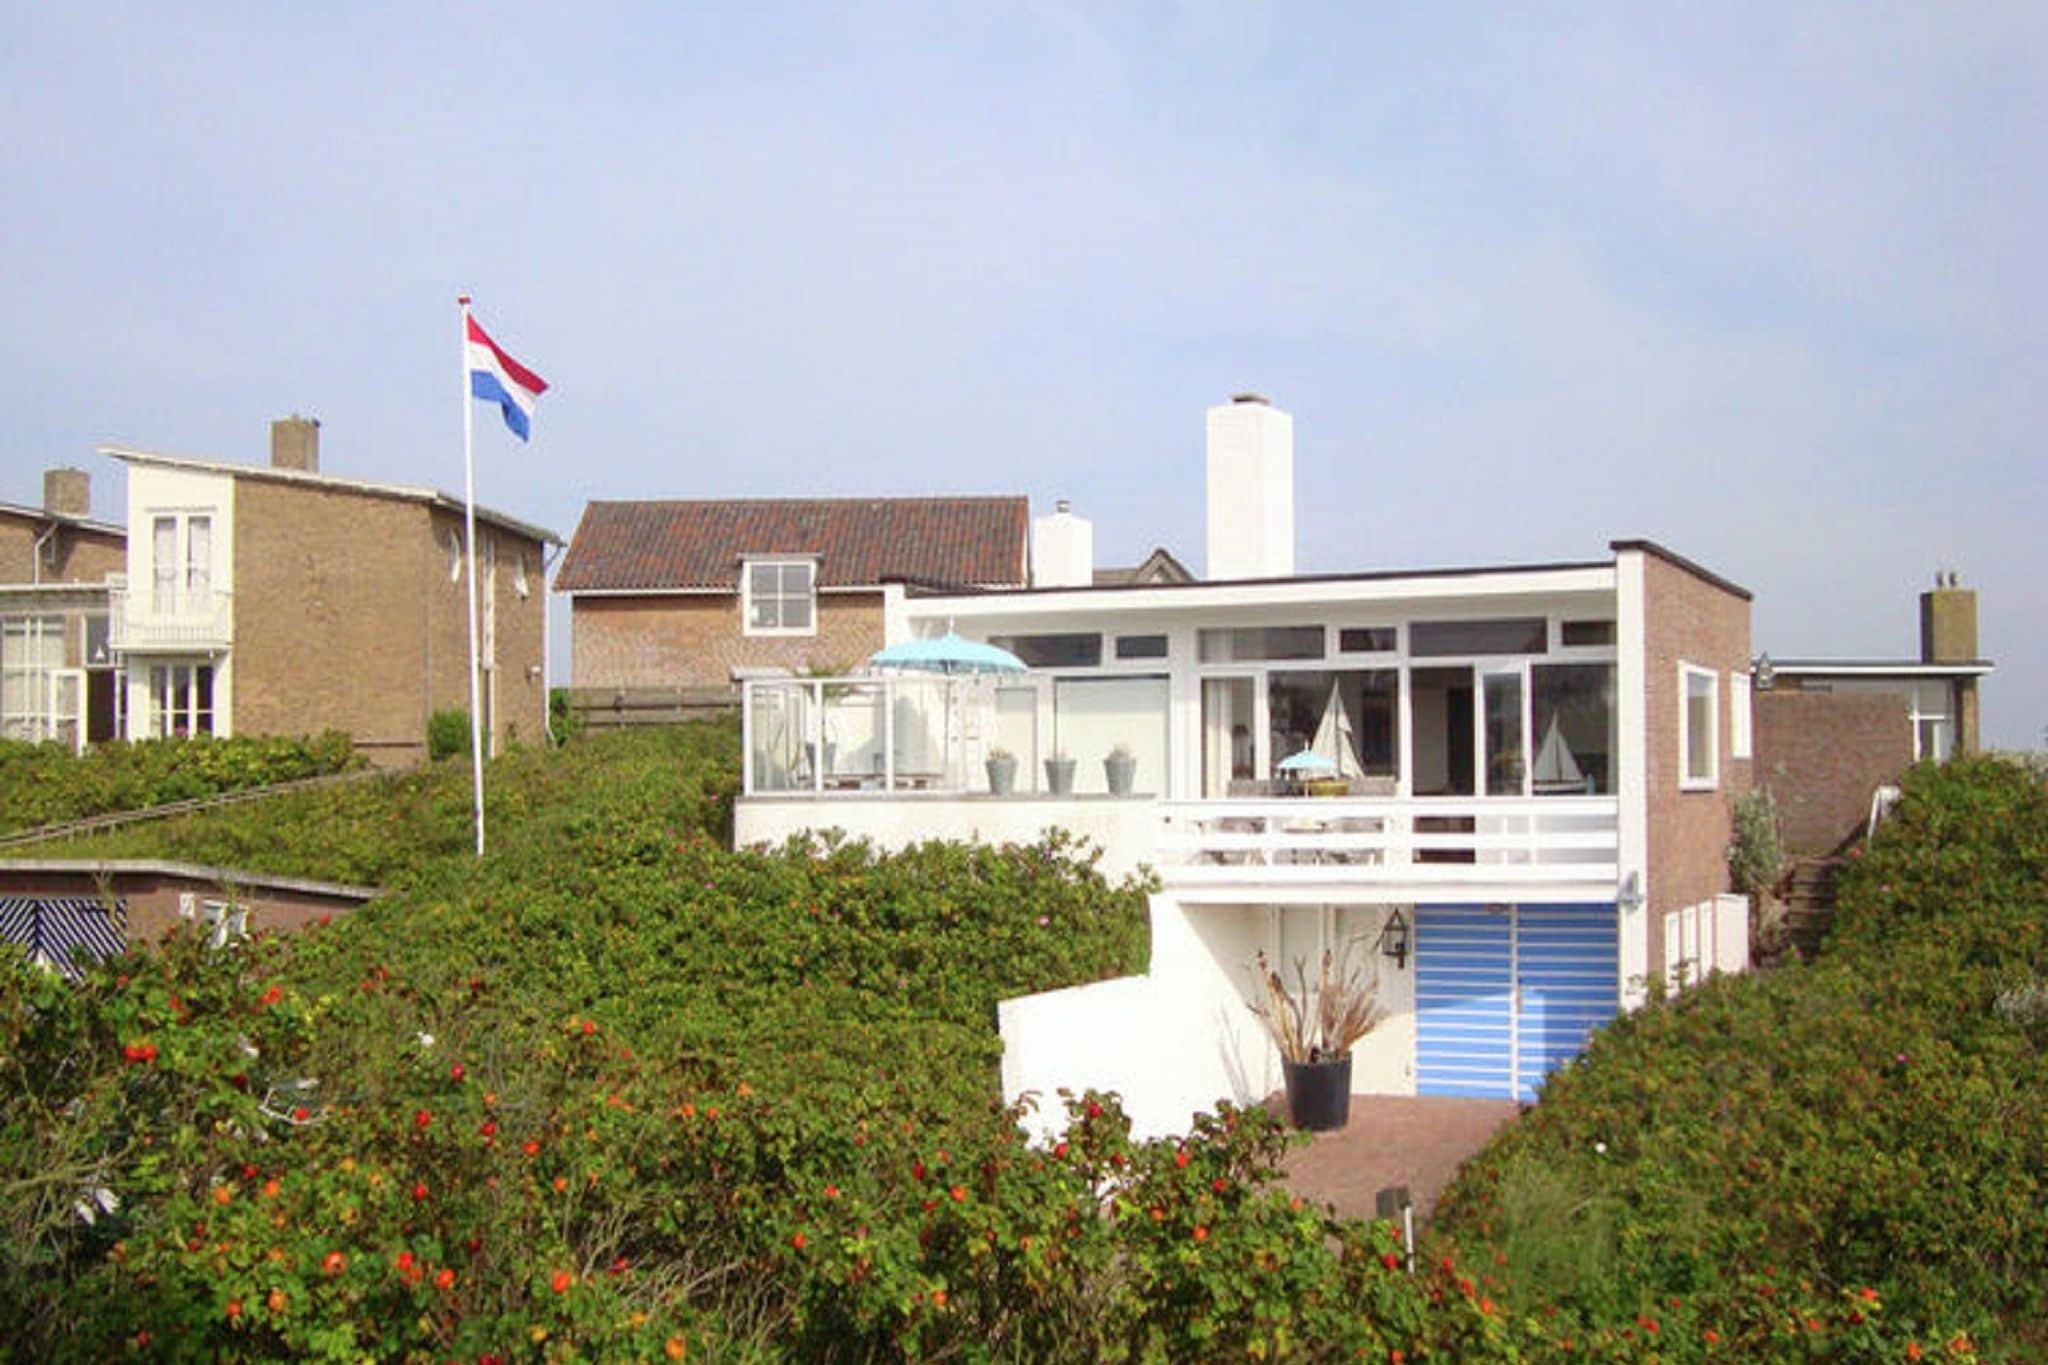 Beautiful house in Bergen aan Zee in the dunes